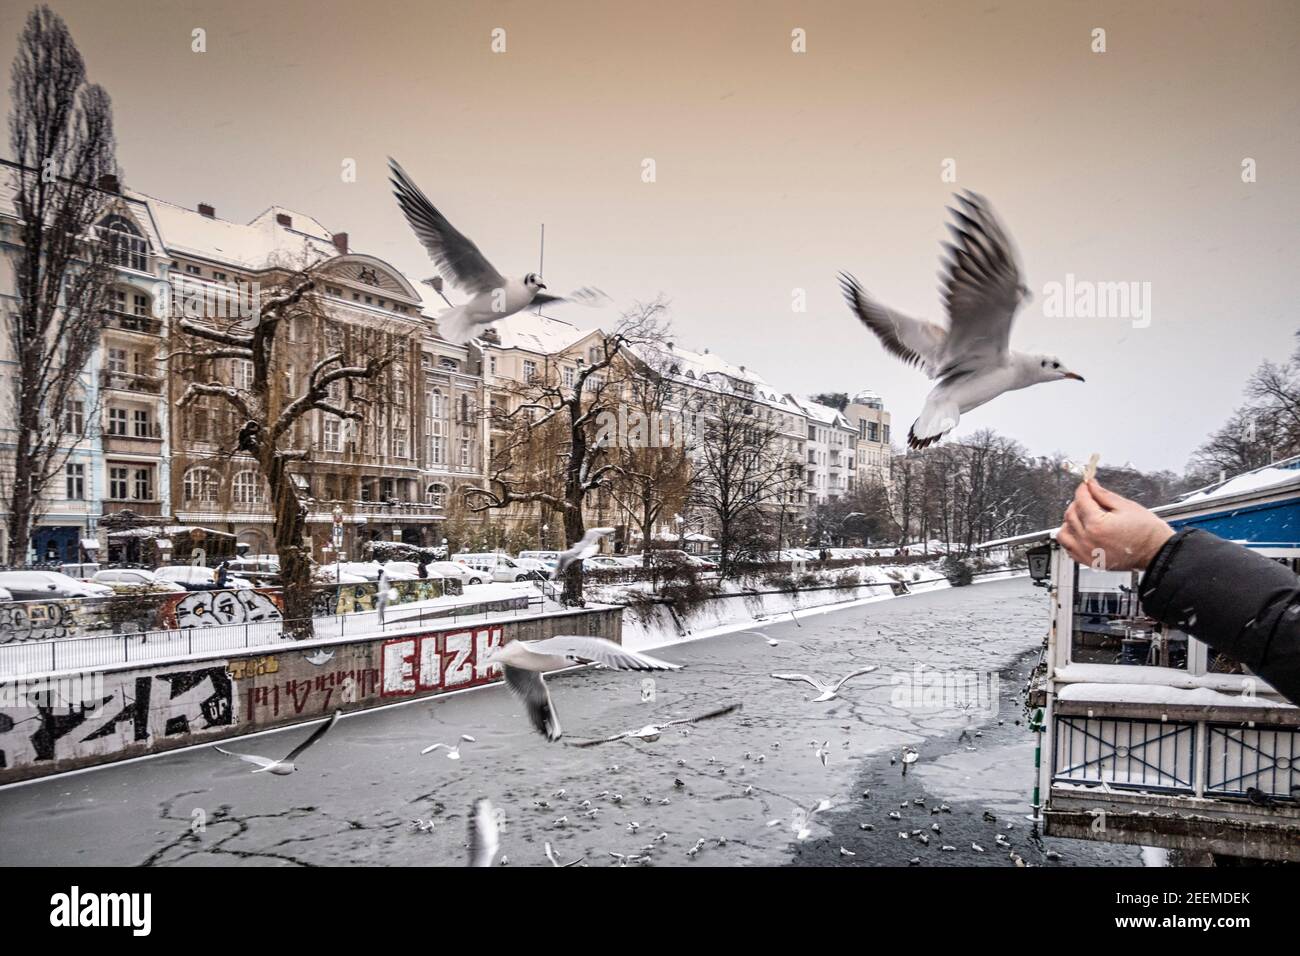 Landwehrkanal im Winter, Wintereinbruch im Februar 2021, Fütterung von Vögeln, Berlin Stock Photo